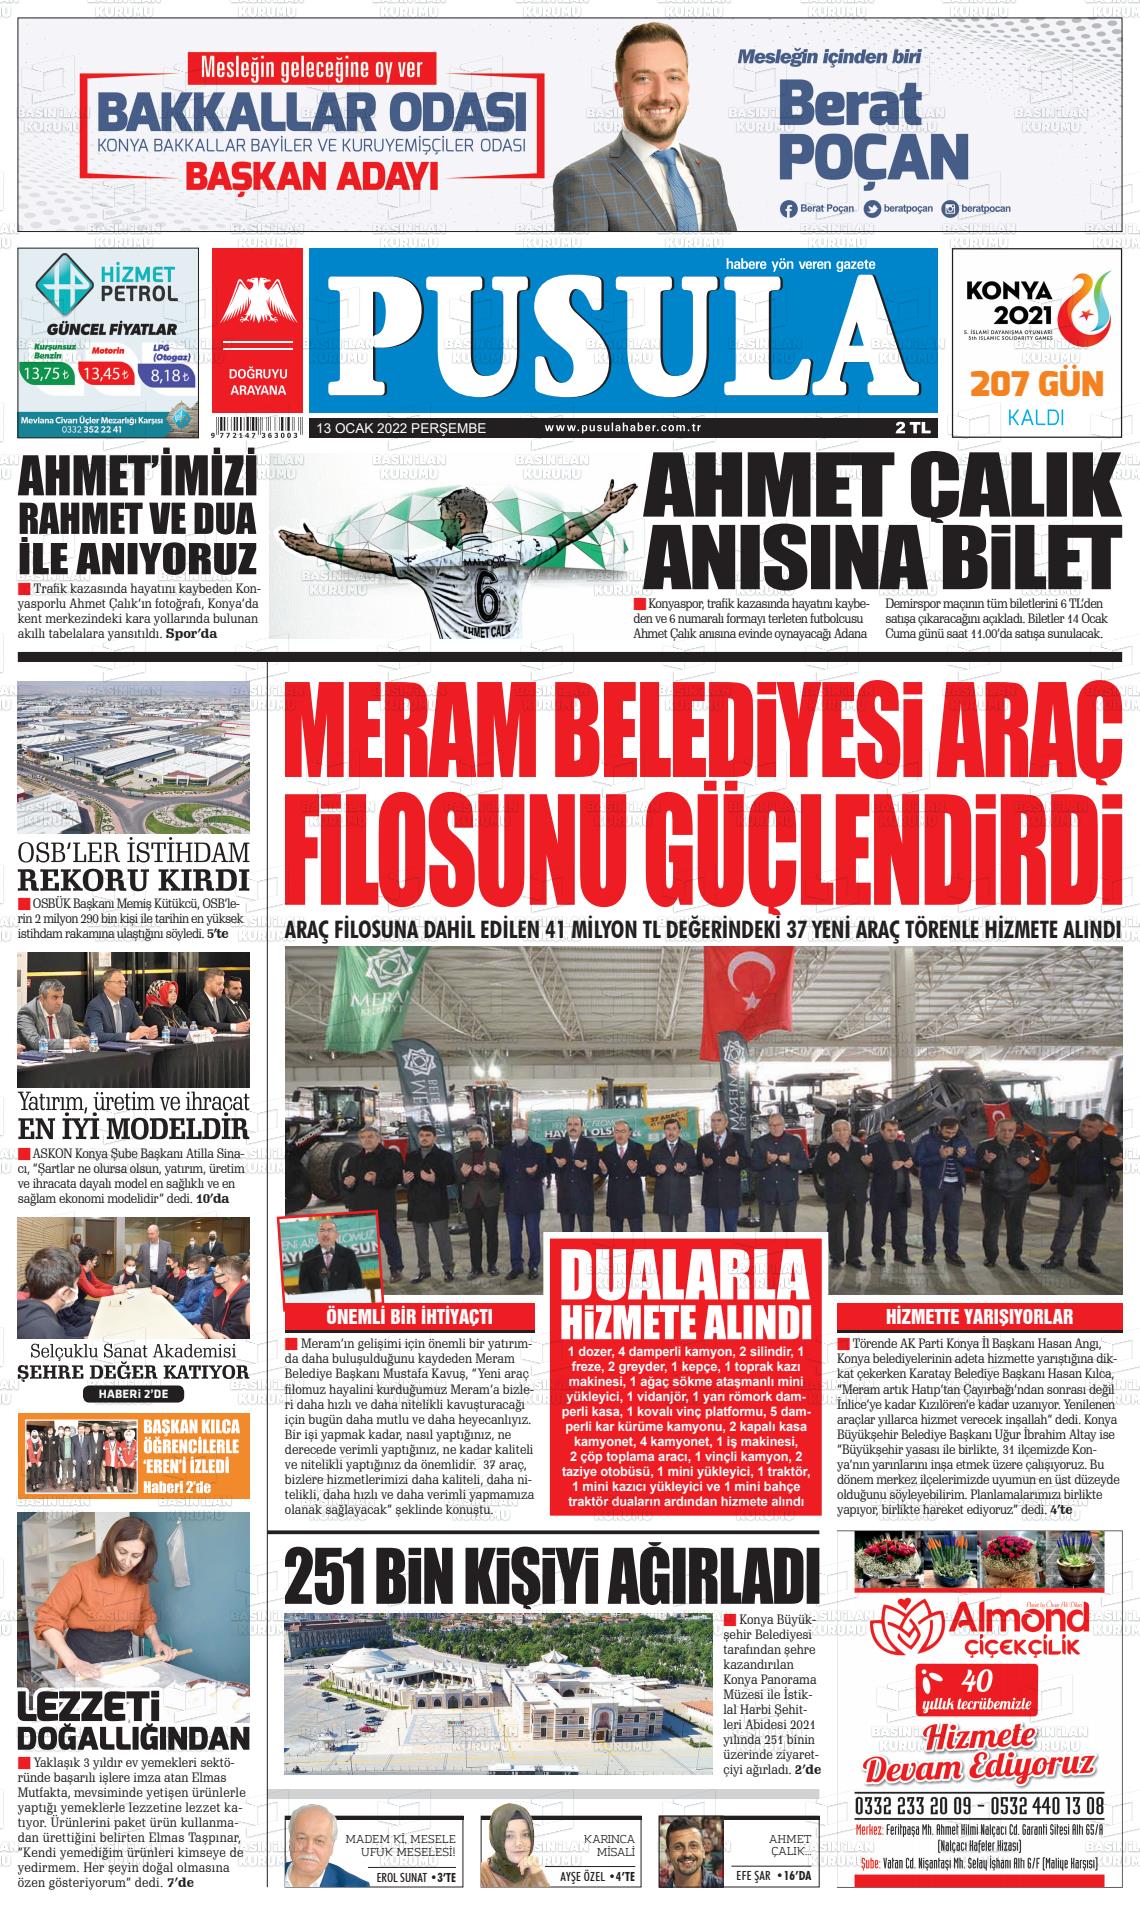 13 Ocak 2022 Pusula Haber Gazete Manşeti